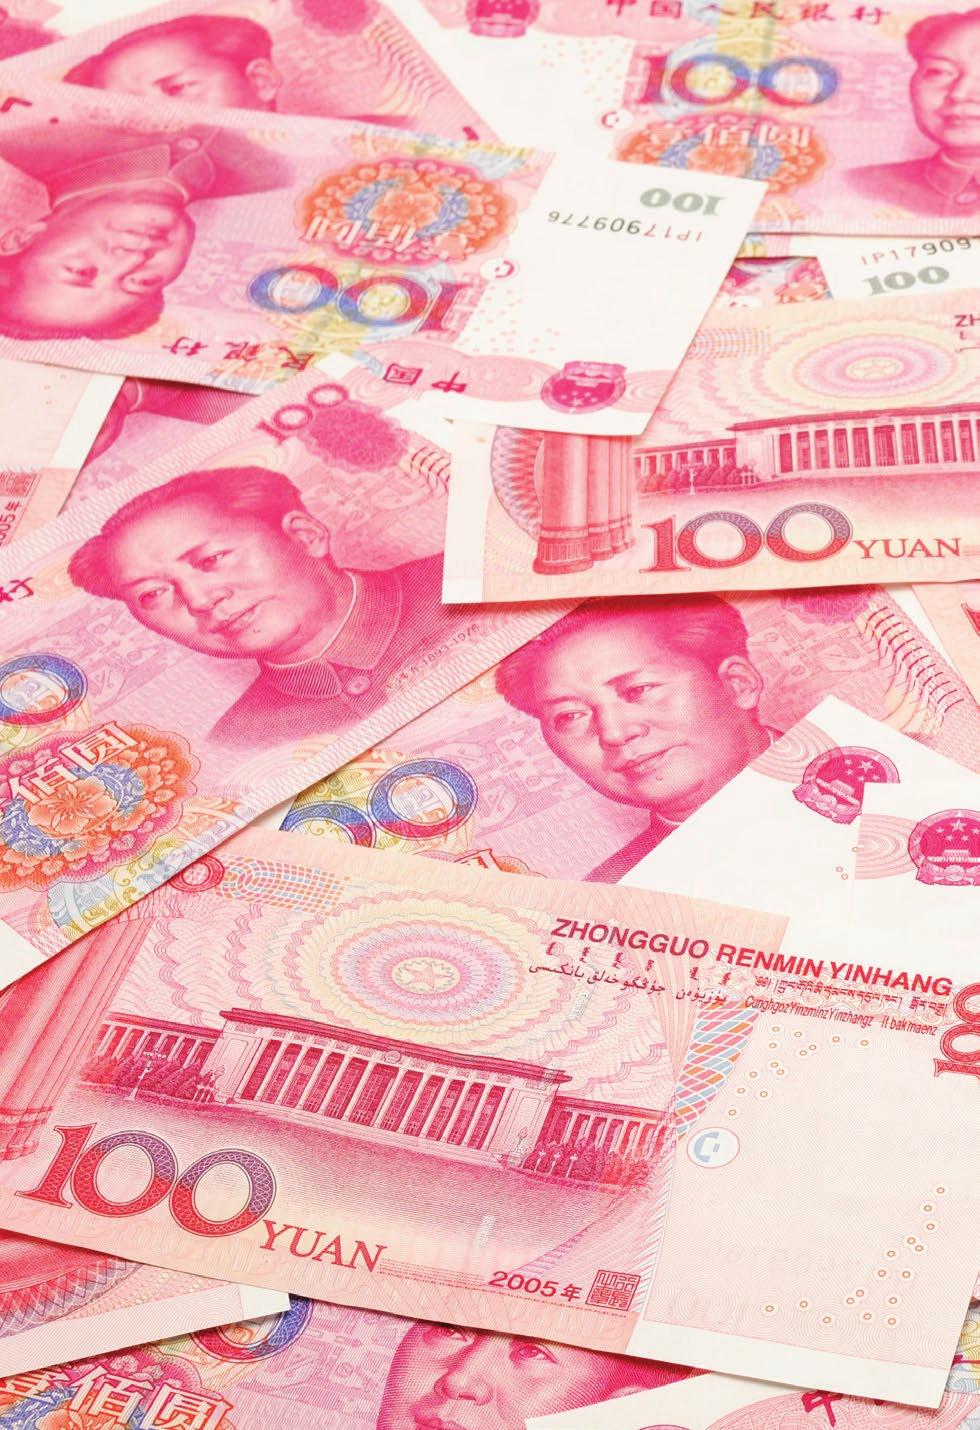 Canada: A RMB